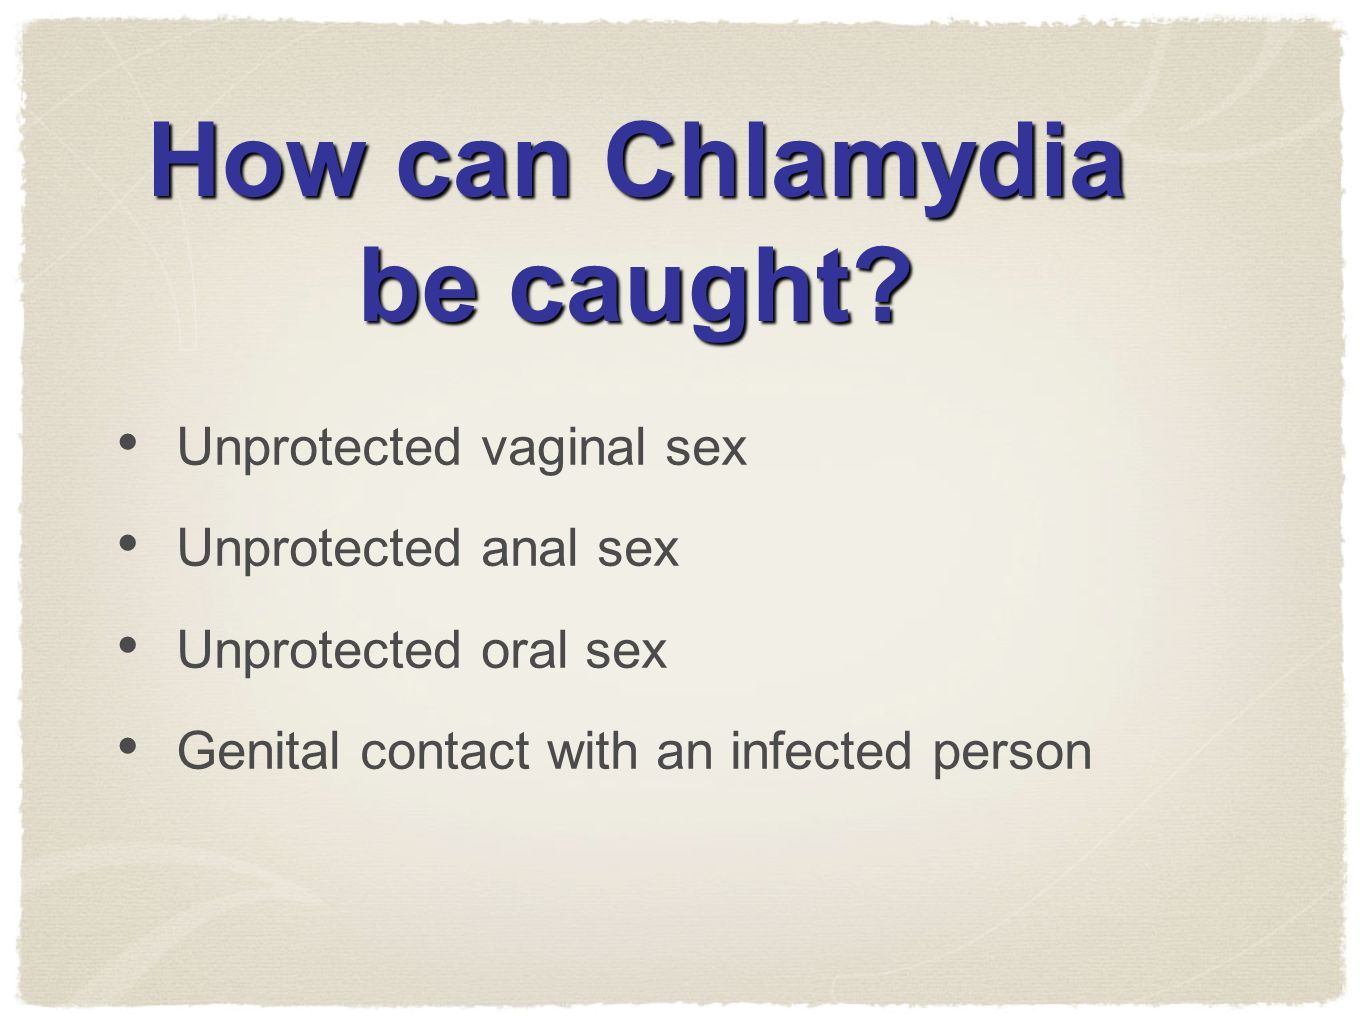 Armani reccomend Oral sex chlamydia transmission